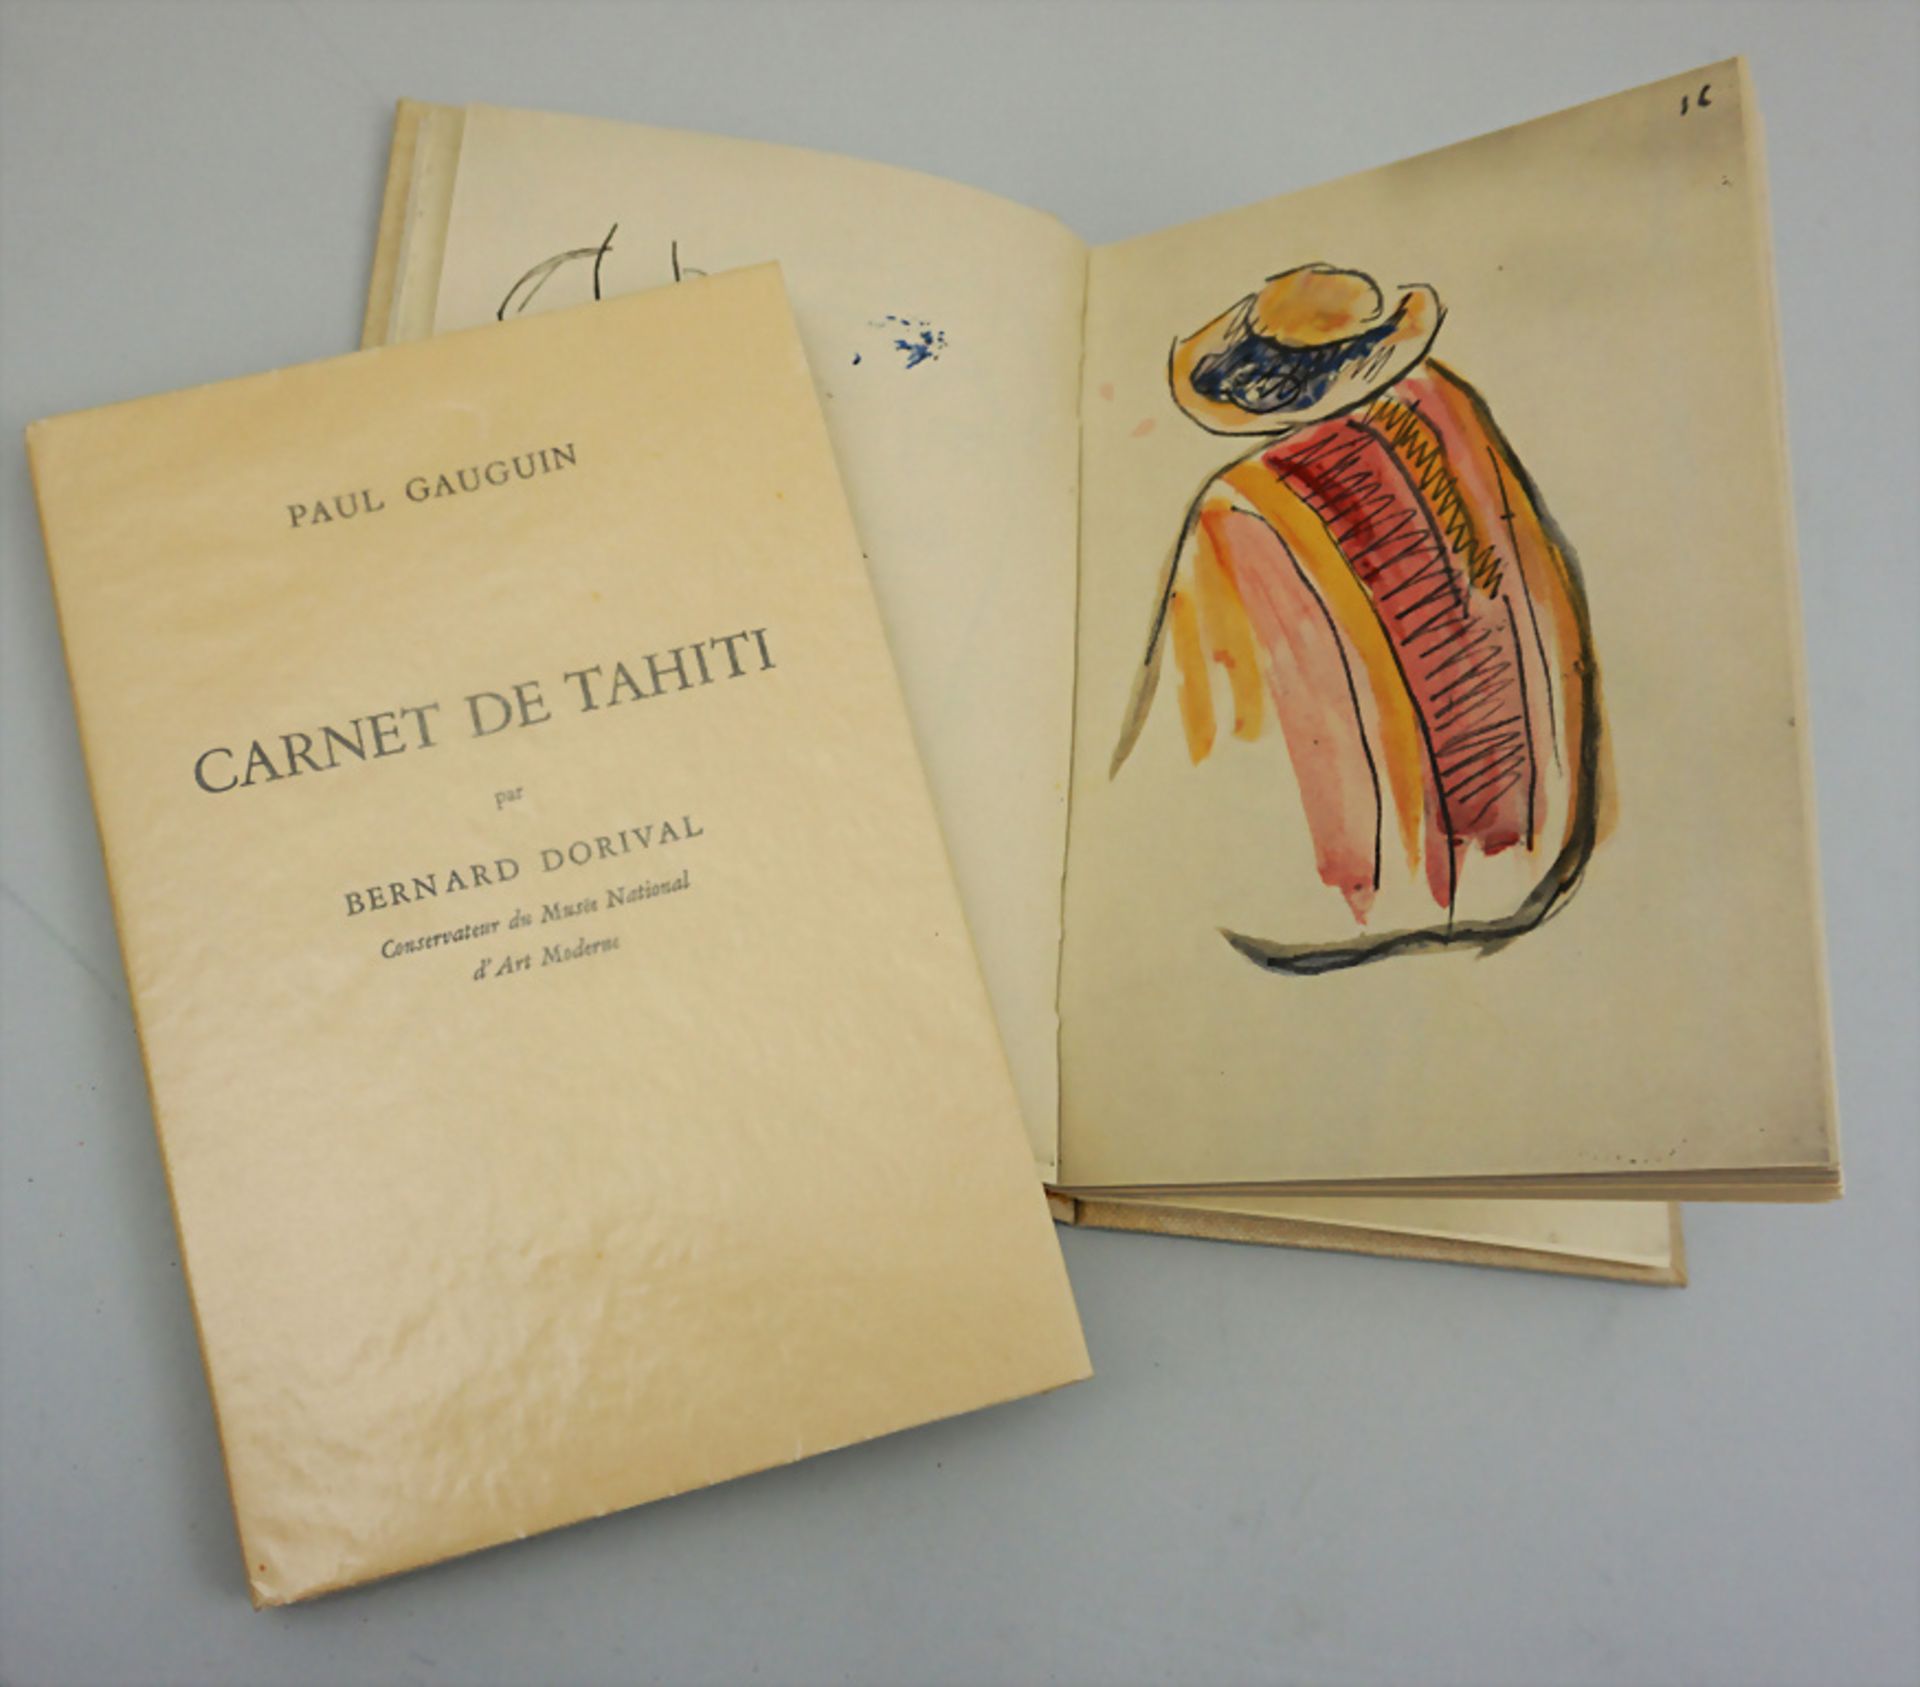 Paul Gauguin: Carnet de Tahiti, Paris, 1954, limitierte Edition